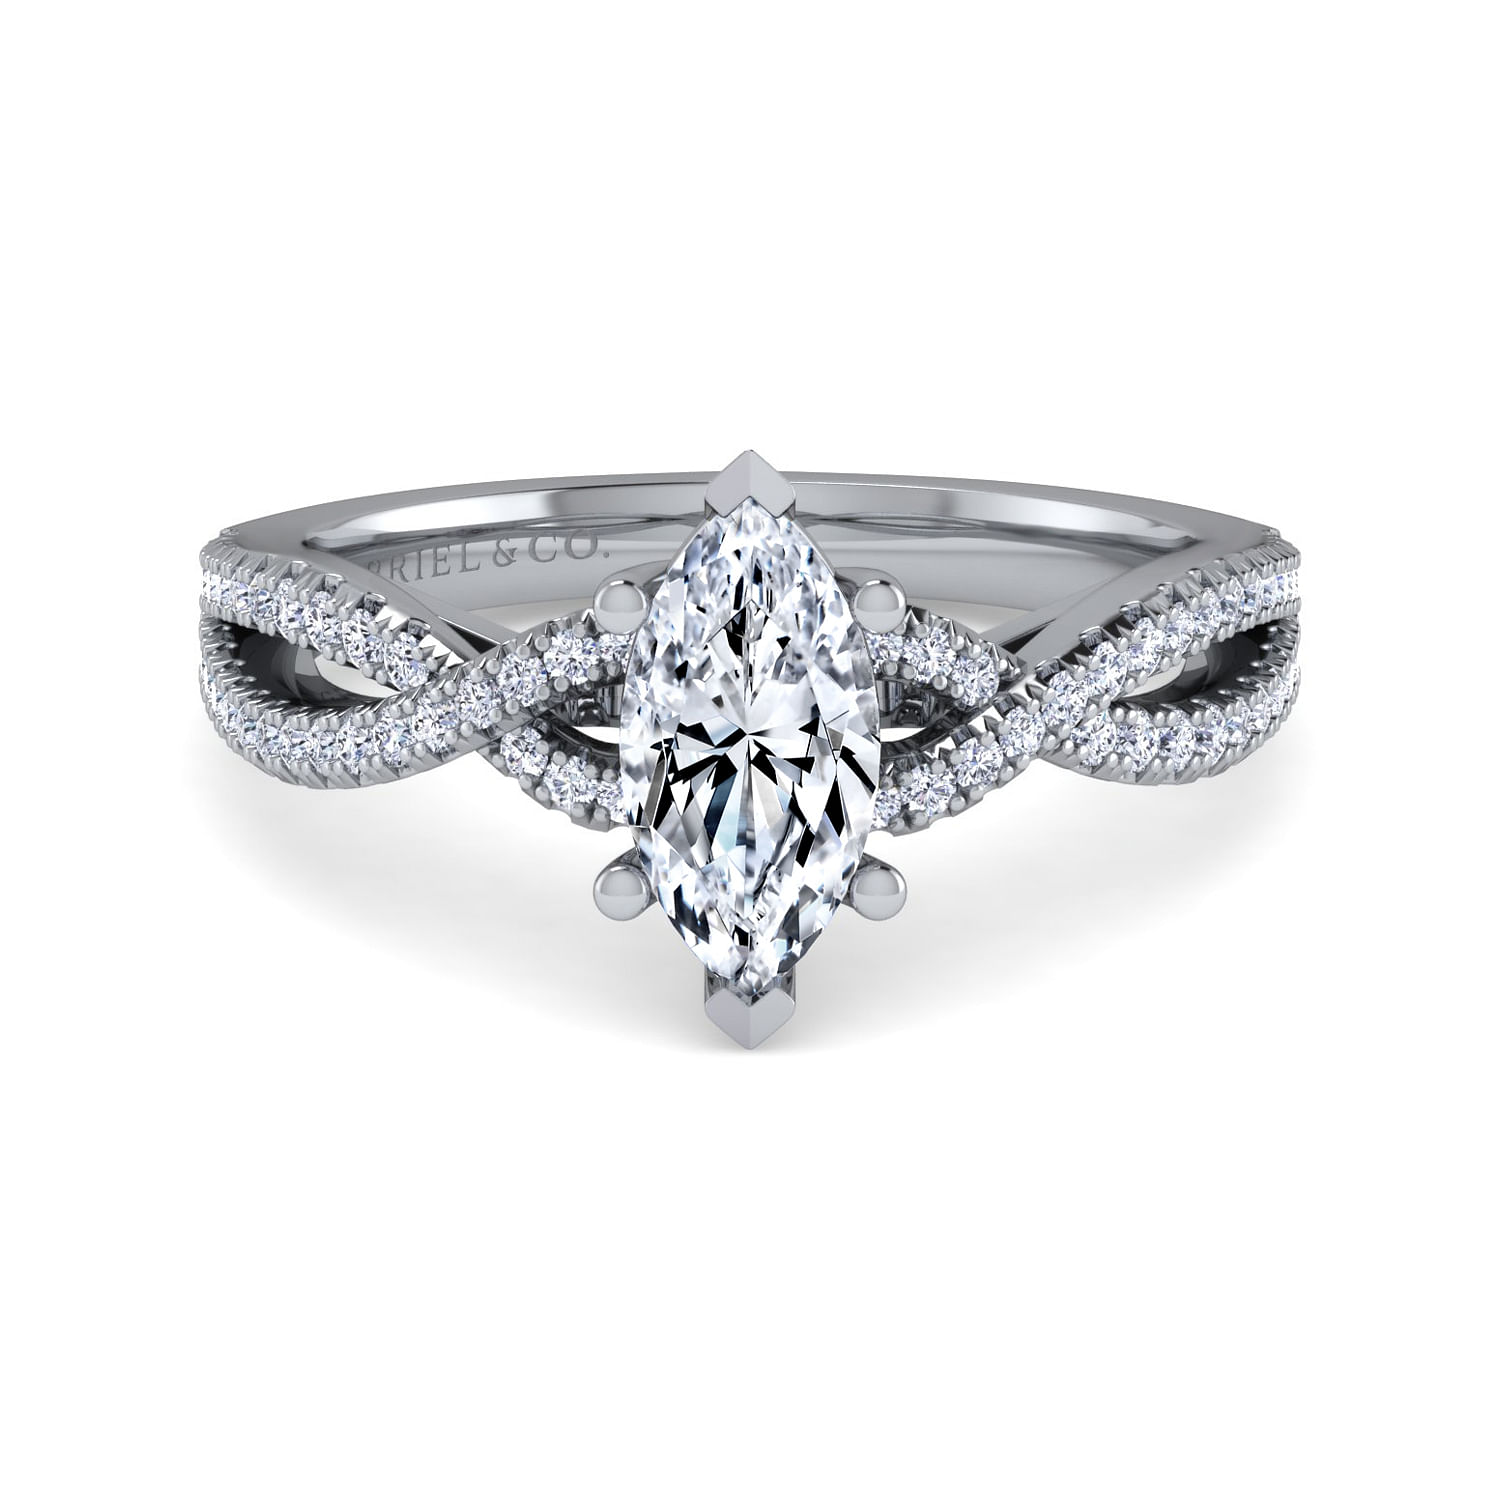 Gina - Platinum Twisted Marquise Shape Diamond Engagement Ring